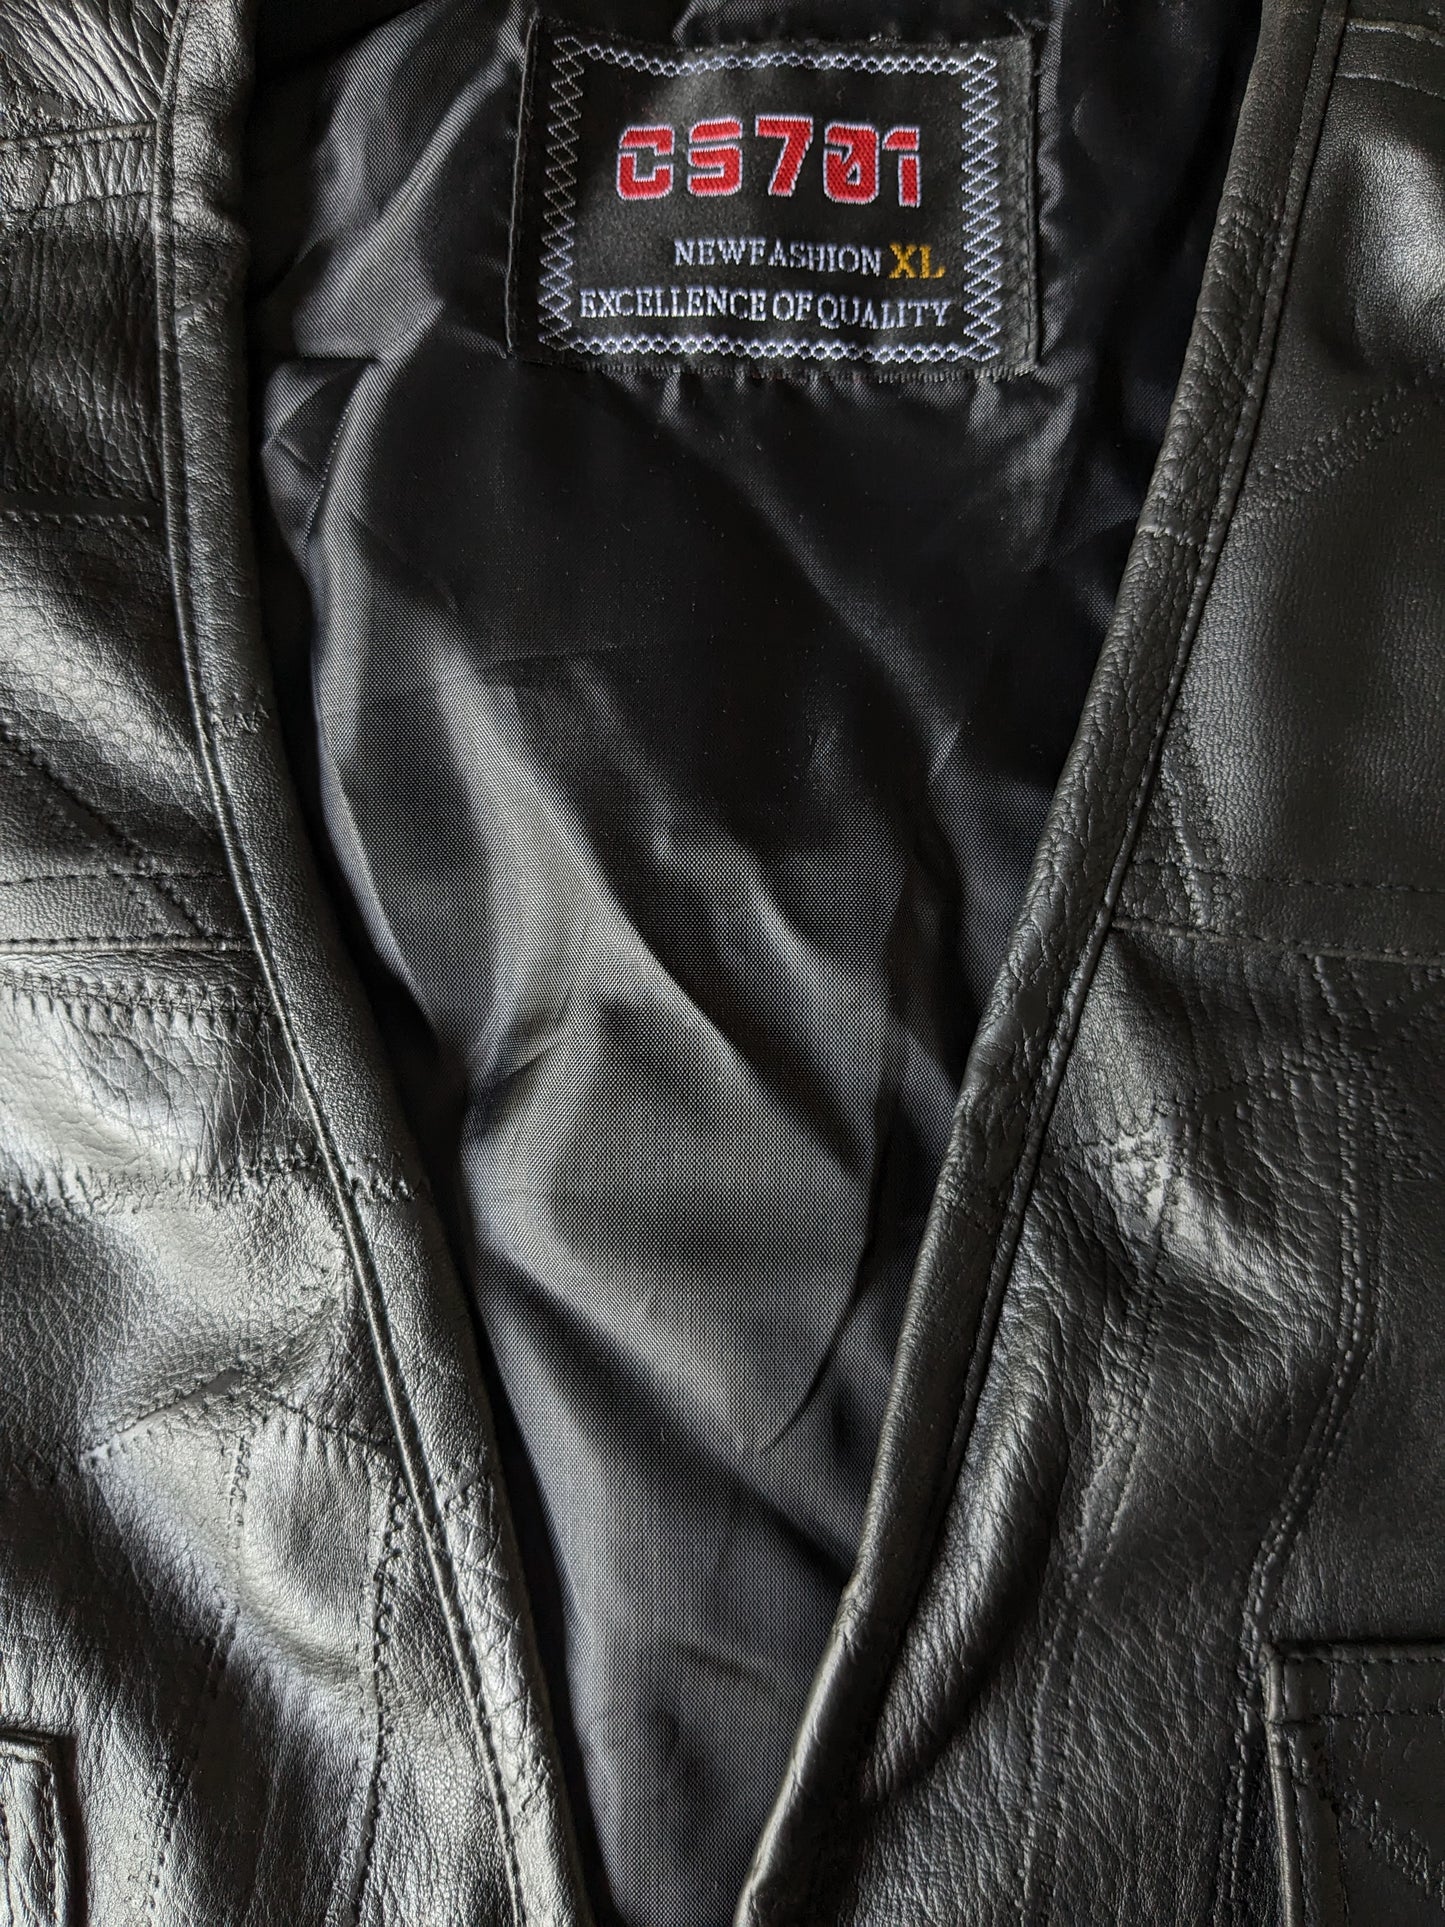 CS701 Cuir Body Warmer avec de nombreux sacs. Patchs noirs. Taille xl. Avec 1 poche intérieure.